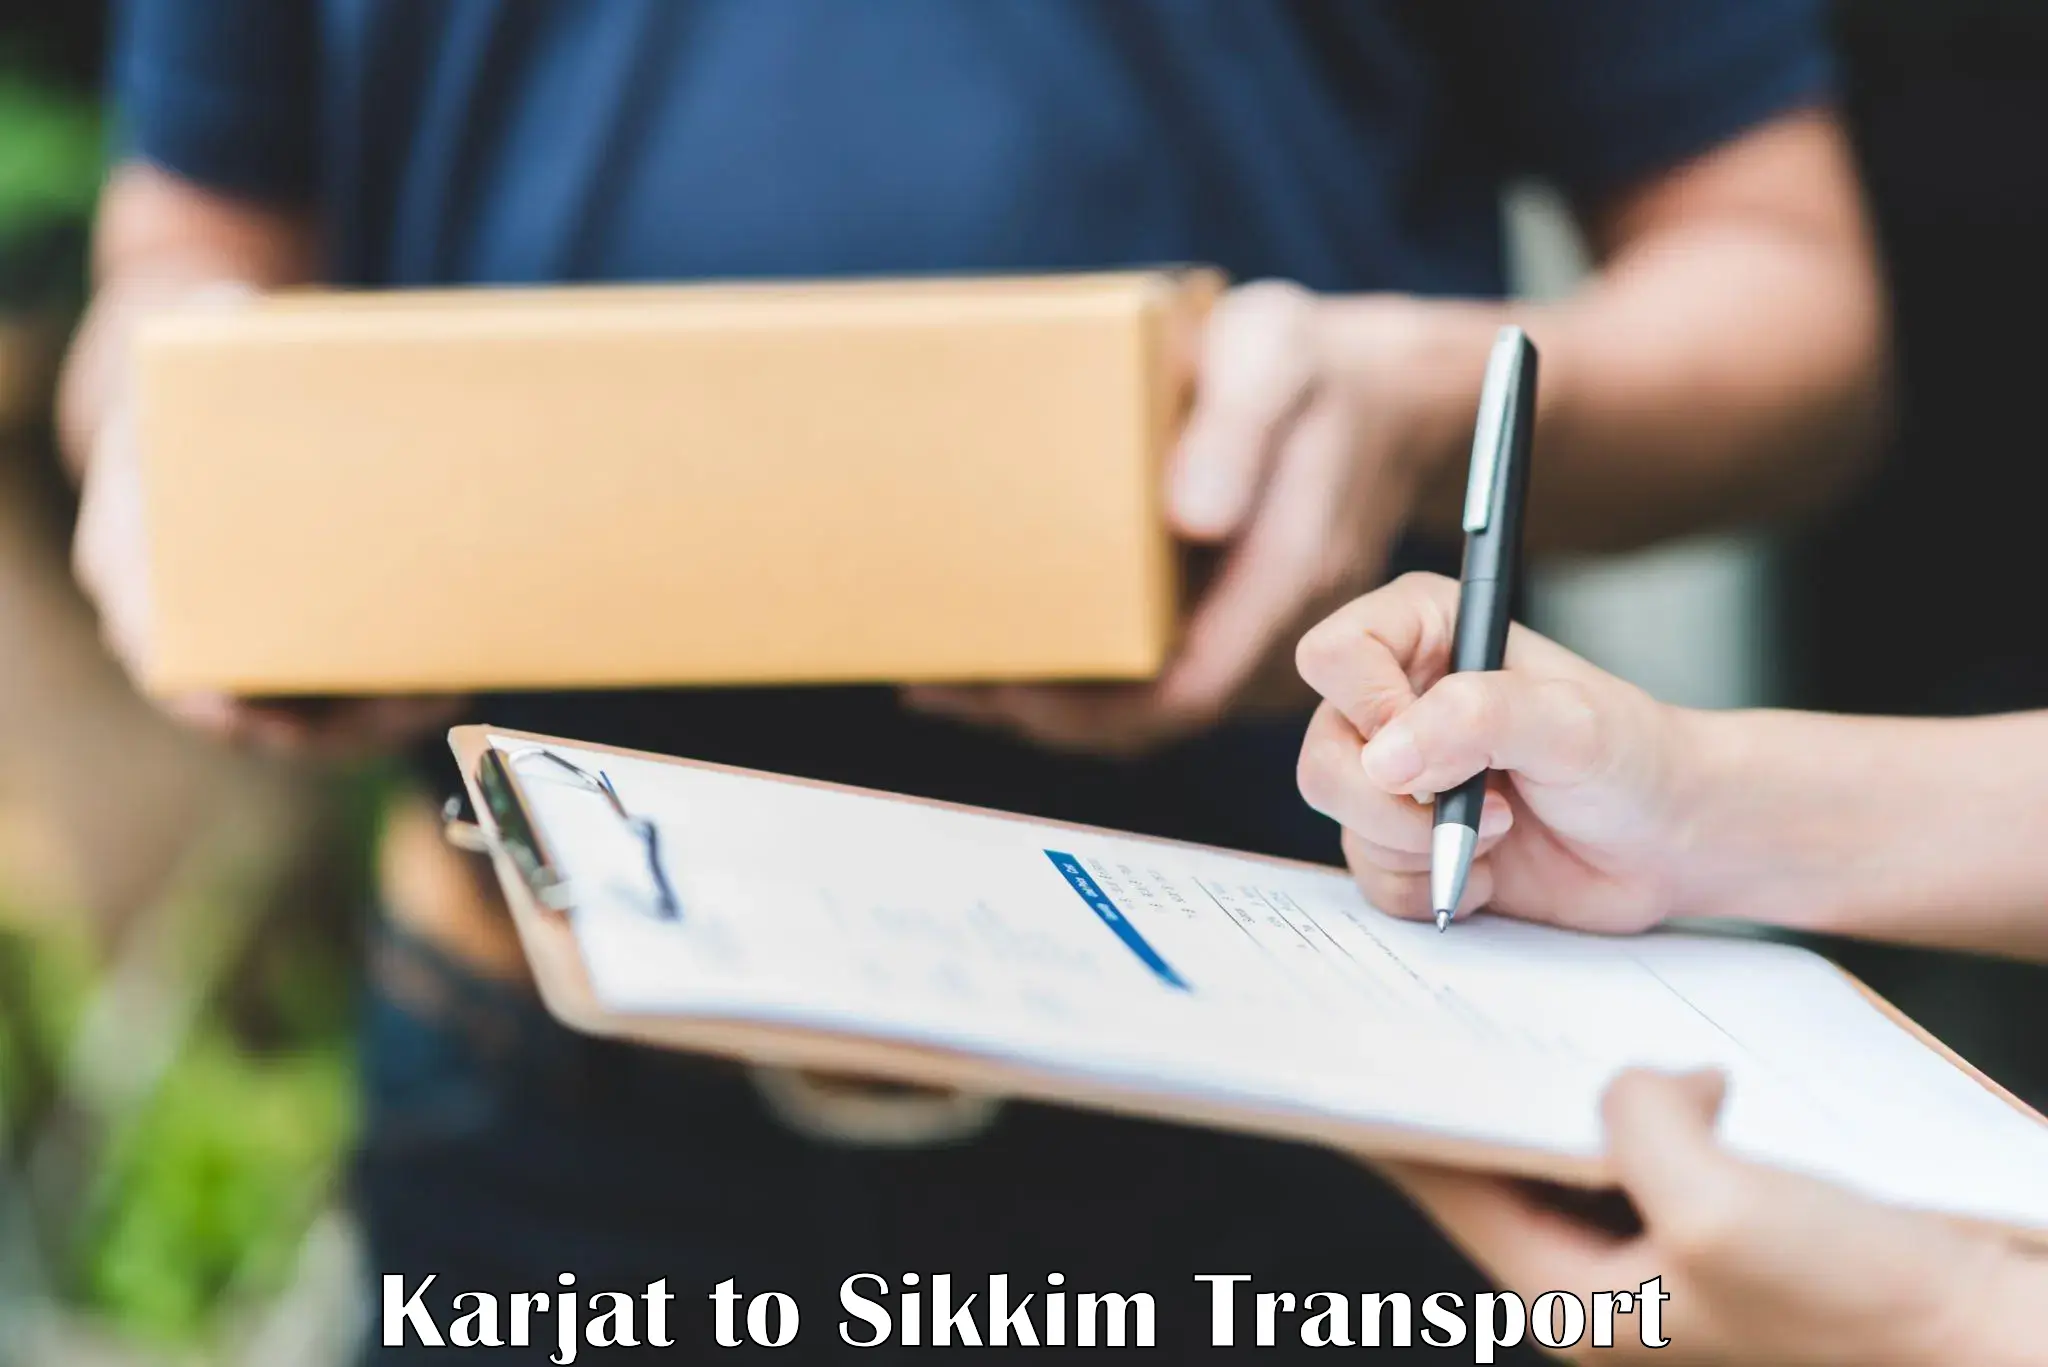 Daily transport service in Karjat to Ravangla